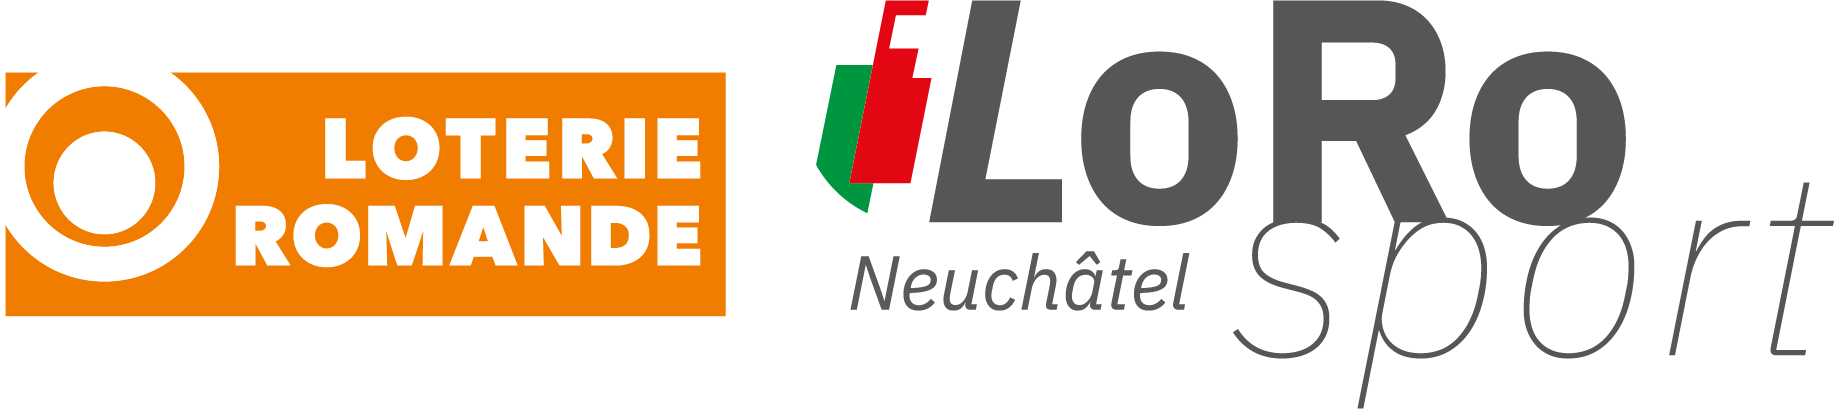 LoRo Neuchâtel